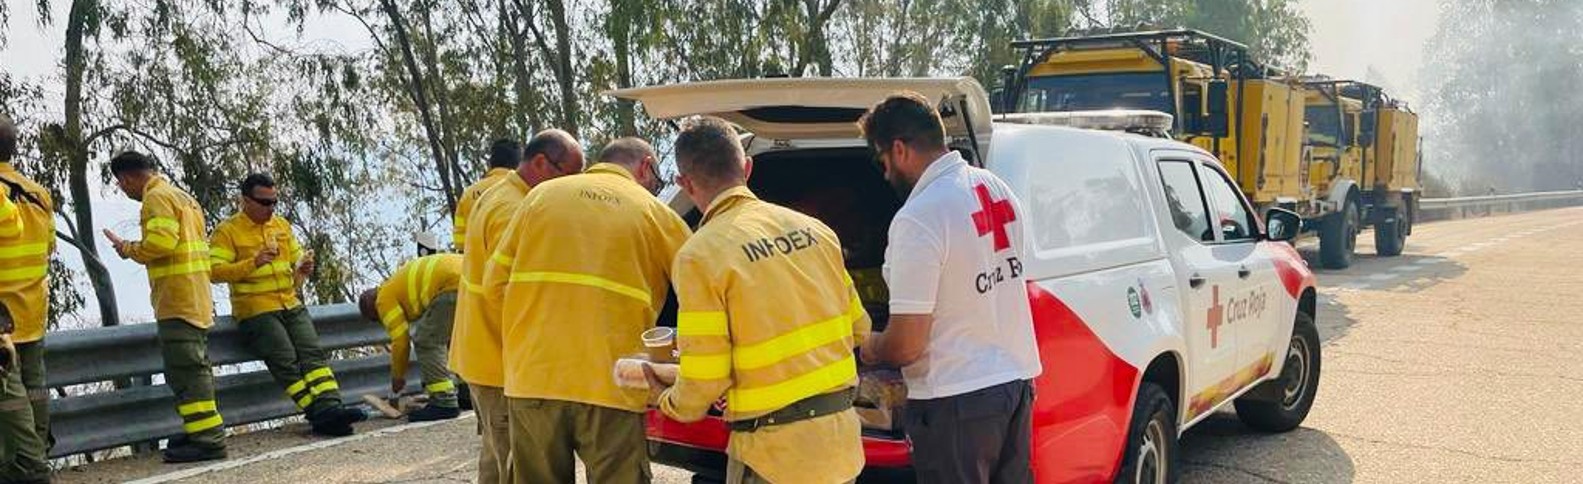 Cruz Roja se moviliza en los incendios que arrasan la península en el peor verano de los últimos diez años